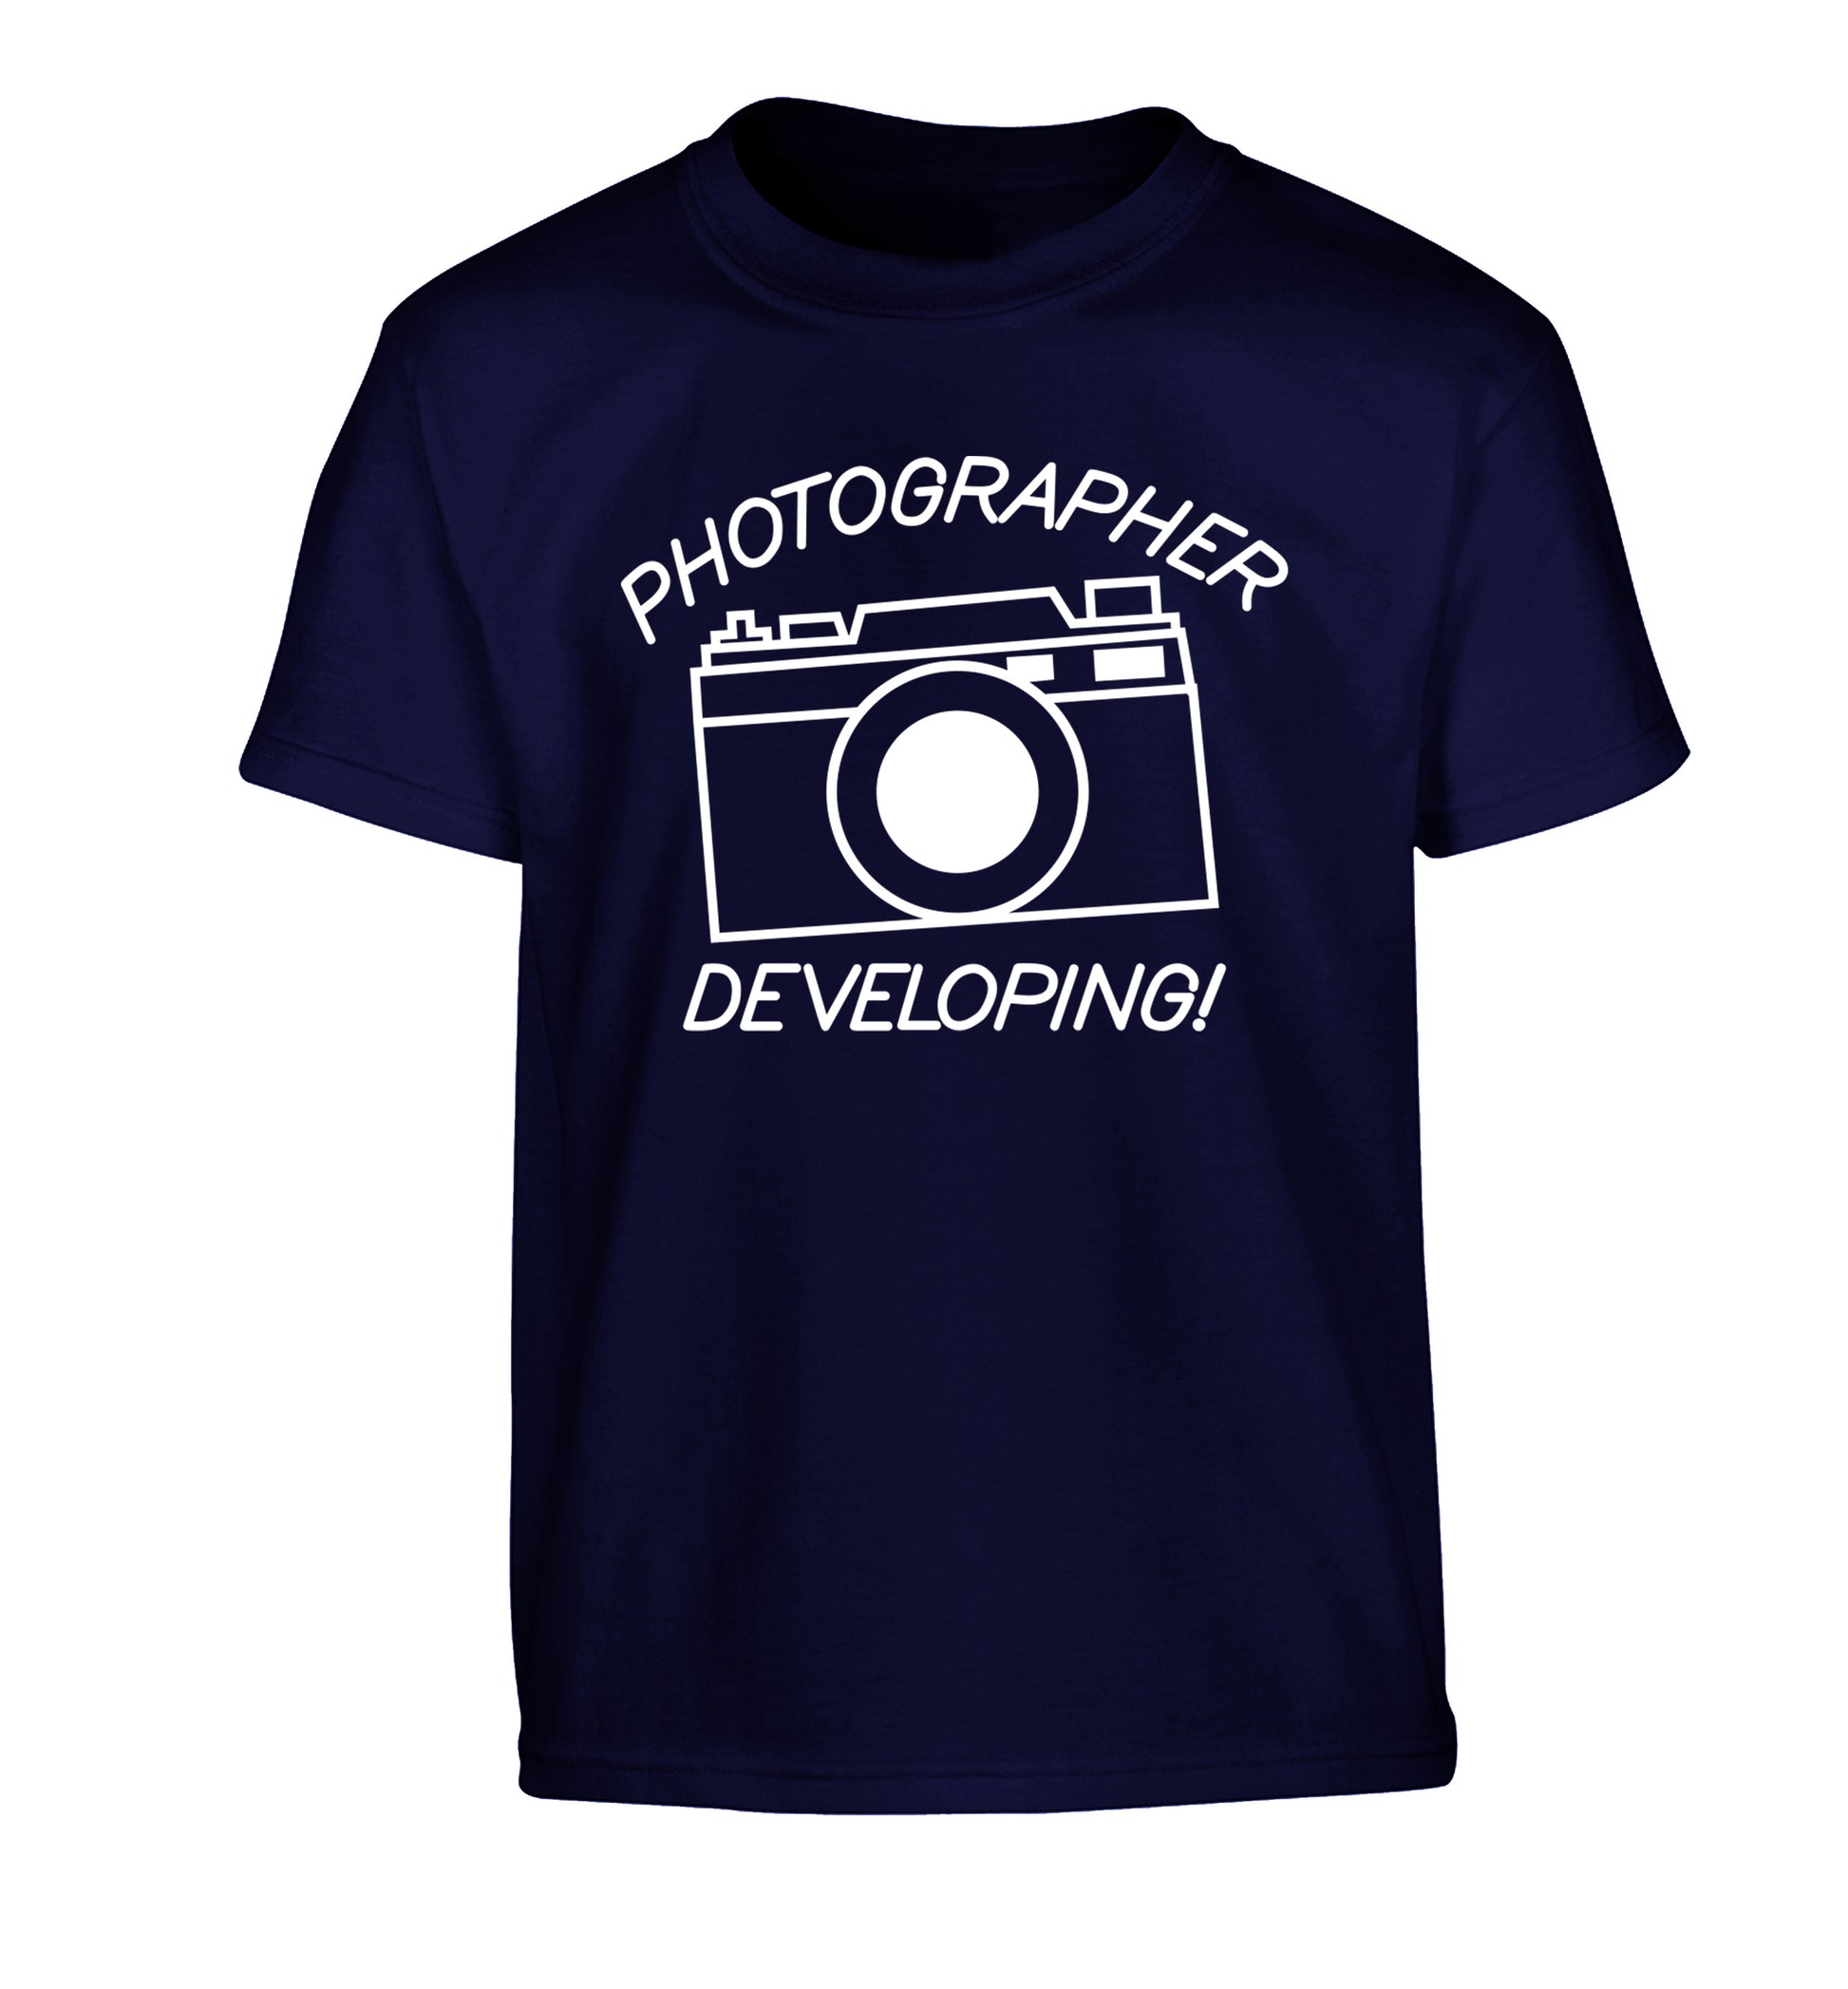 Photographer Developing  Children's navy Tshirt 12-13 Years